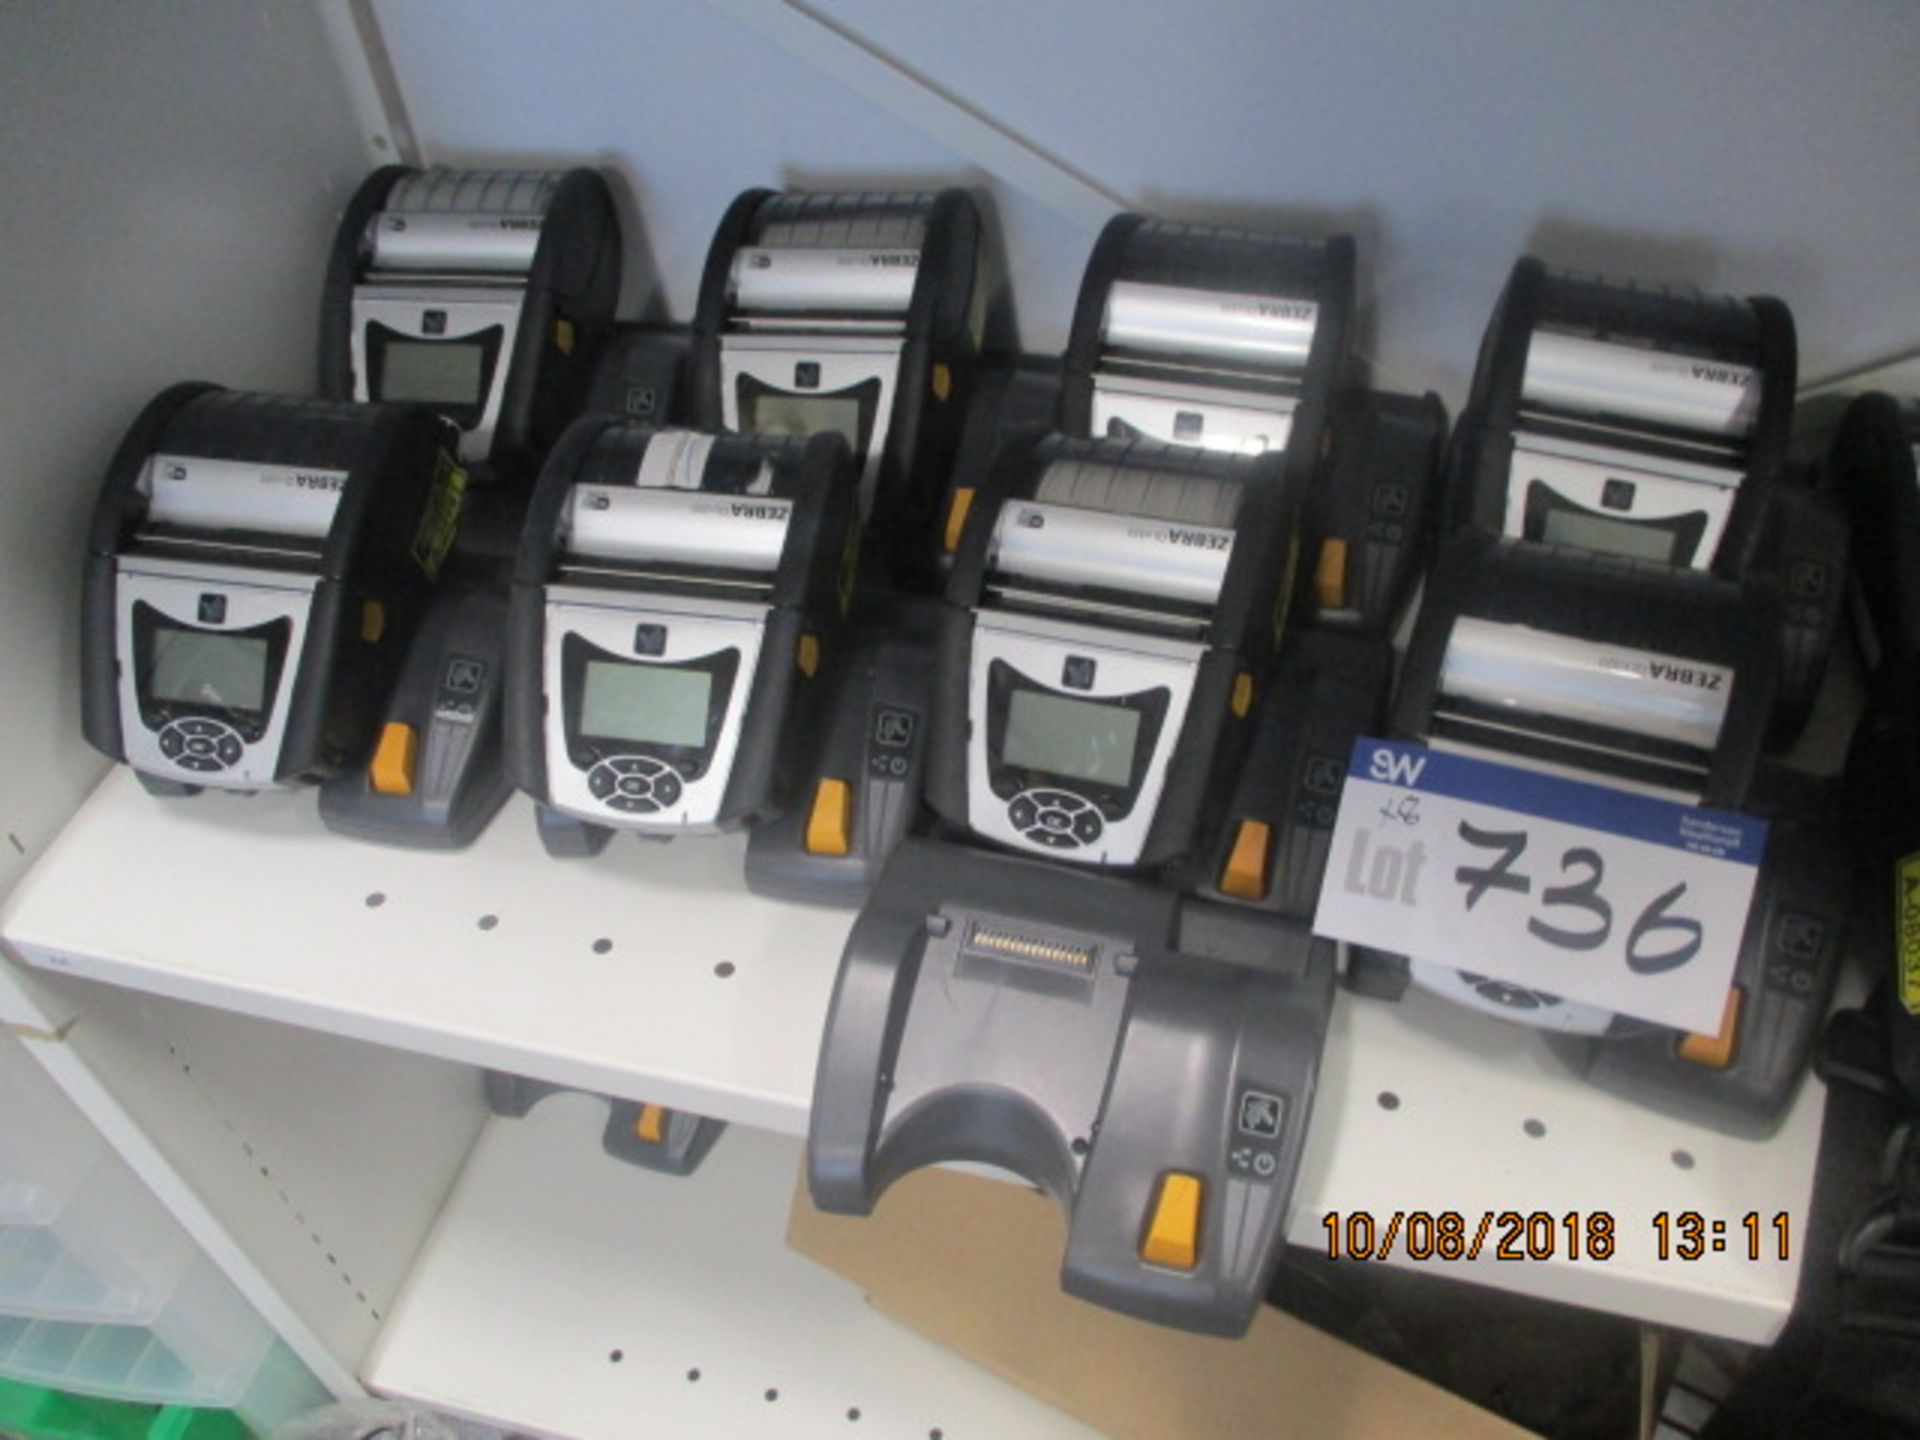 8 x Zebra QLn320 Label Printers